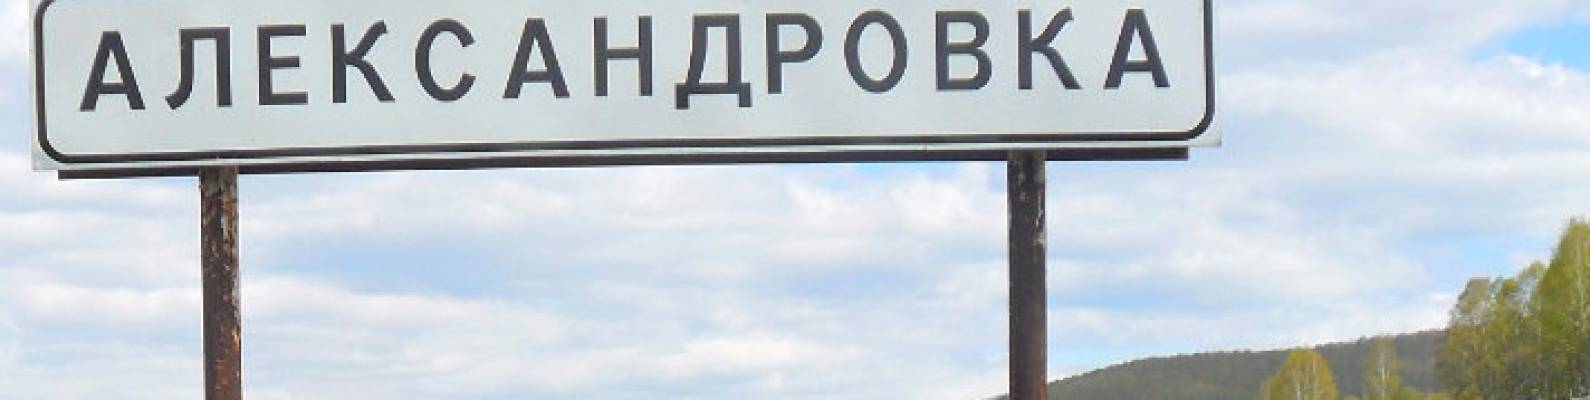  деревня Александровка